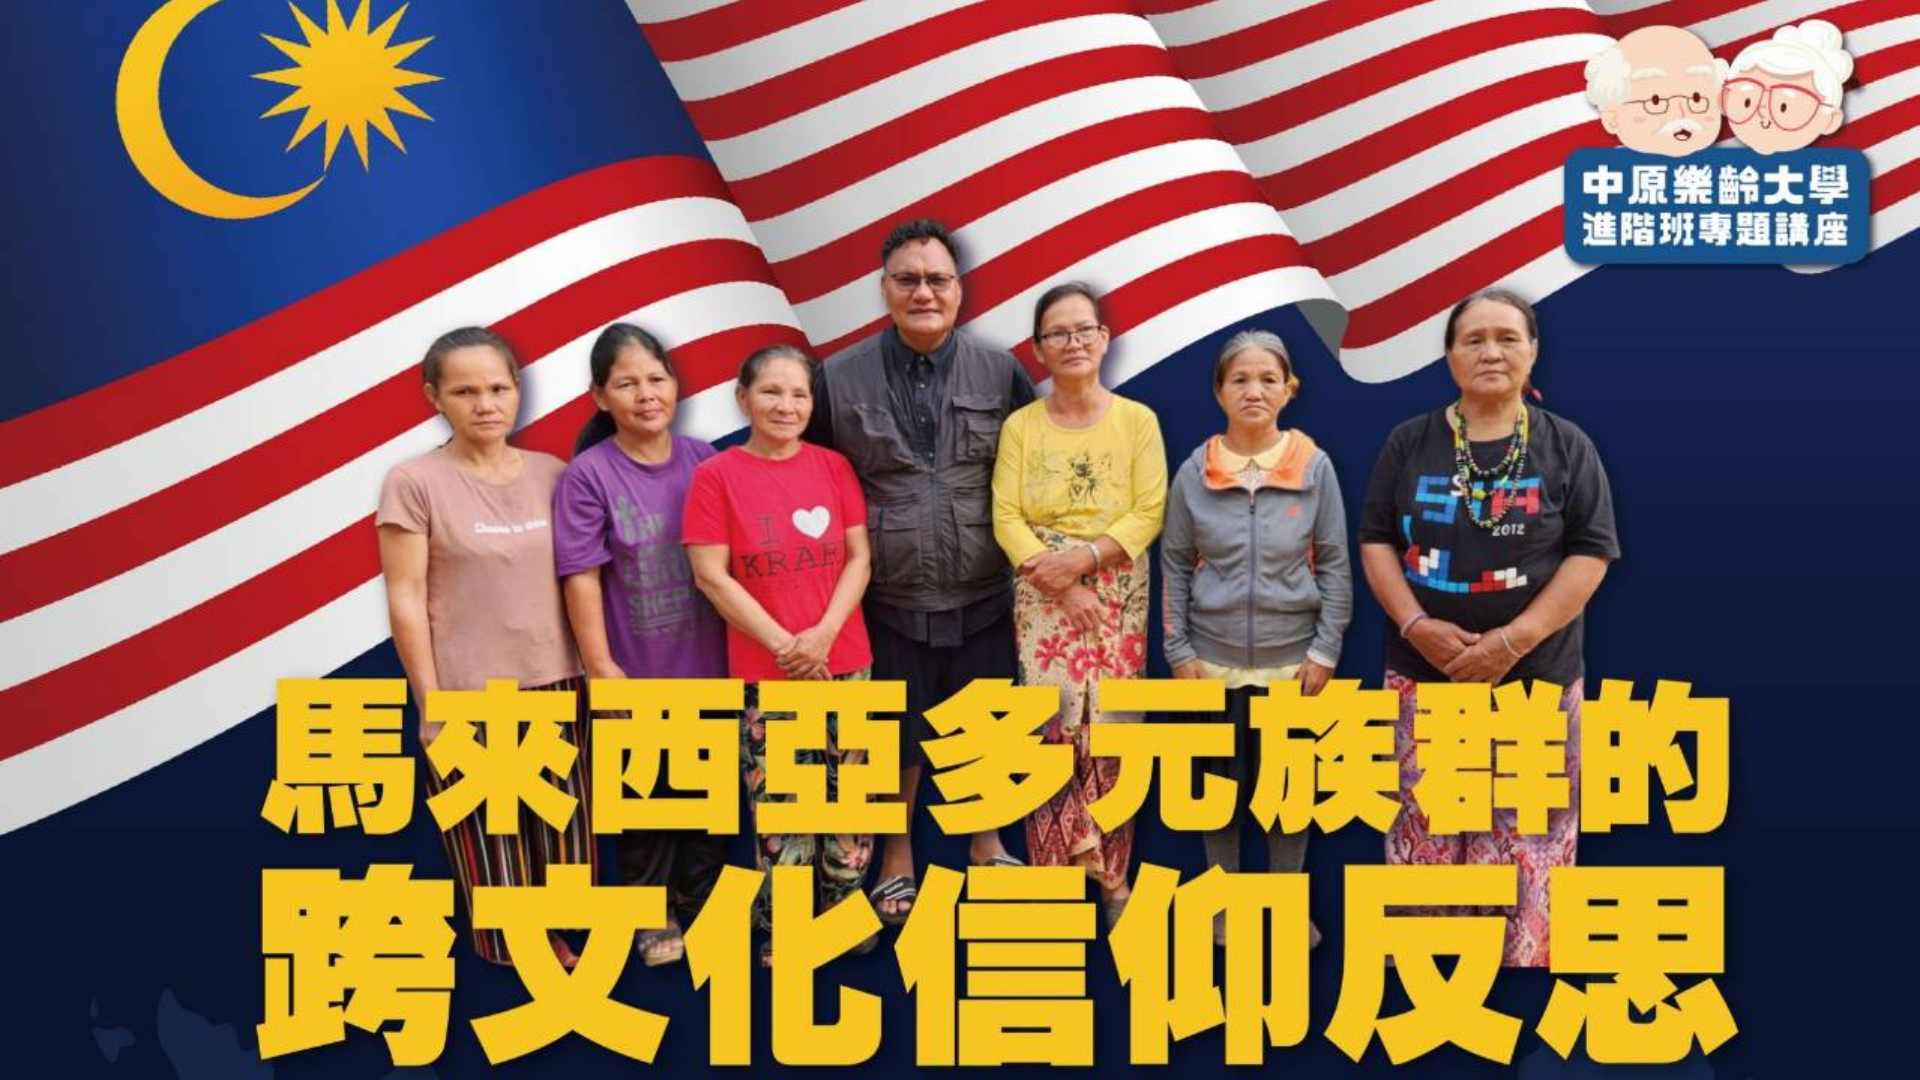 【活動花絮】馬來西亞多元族群的跨文化信仰反思